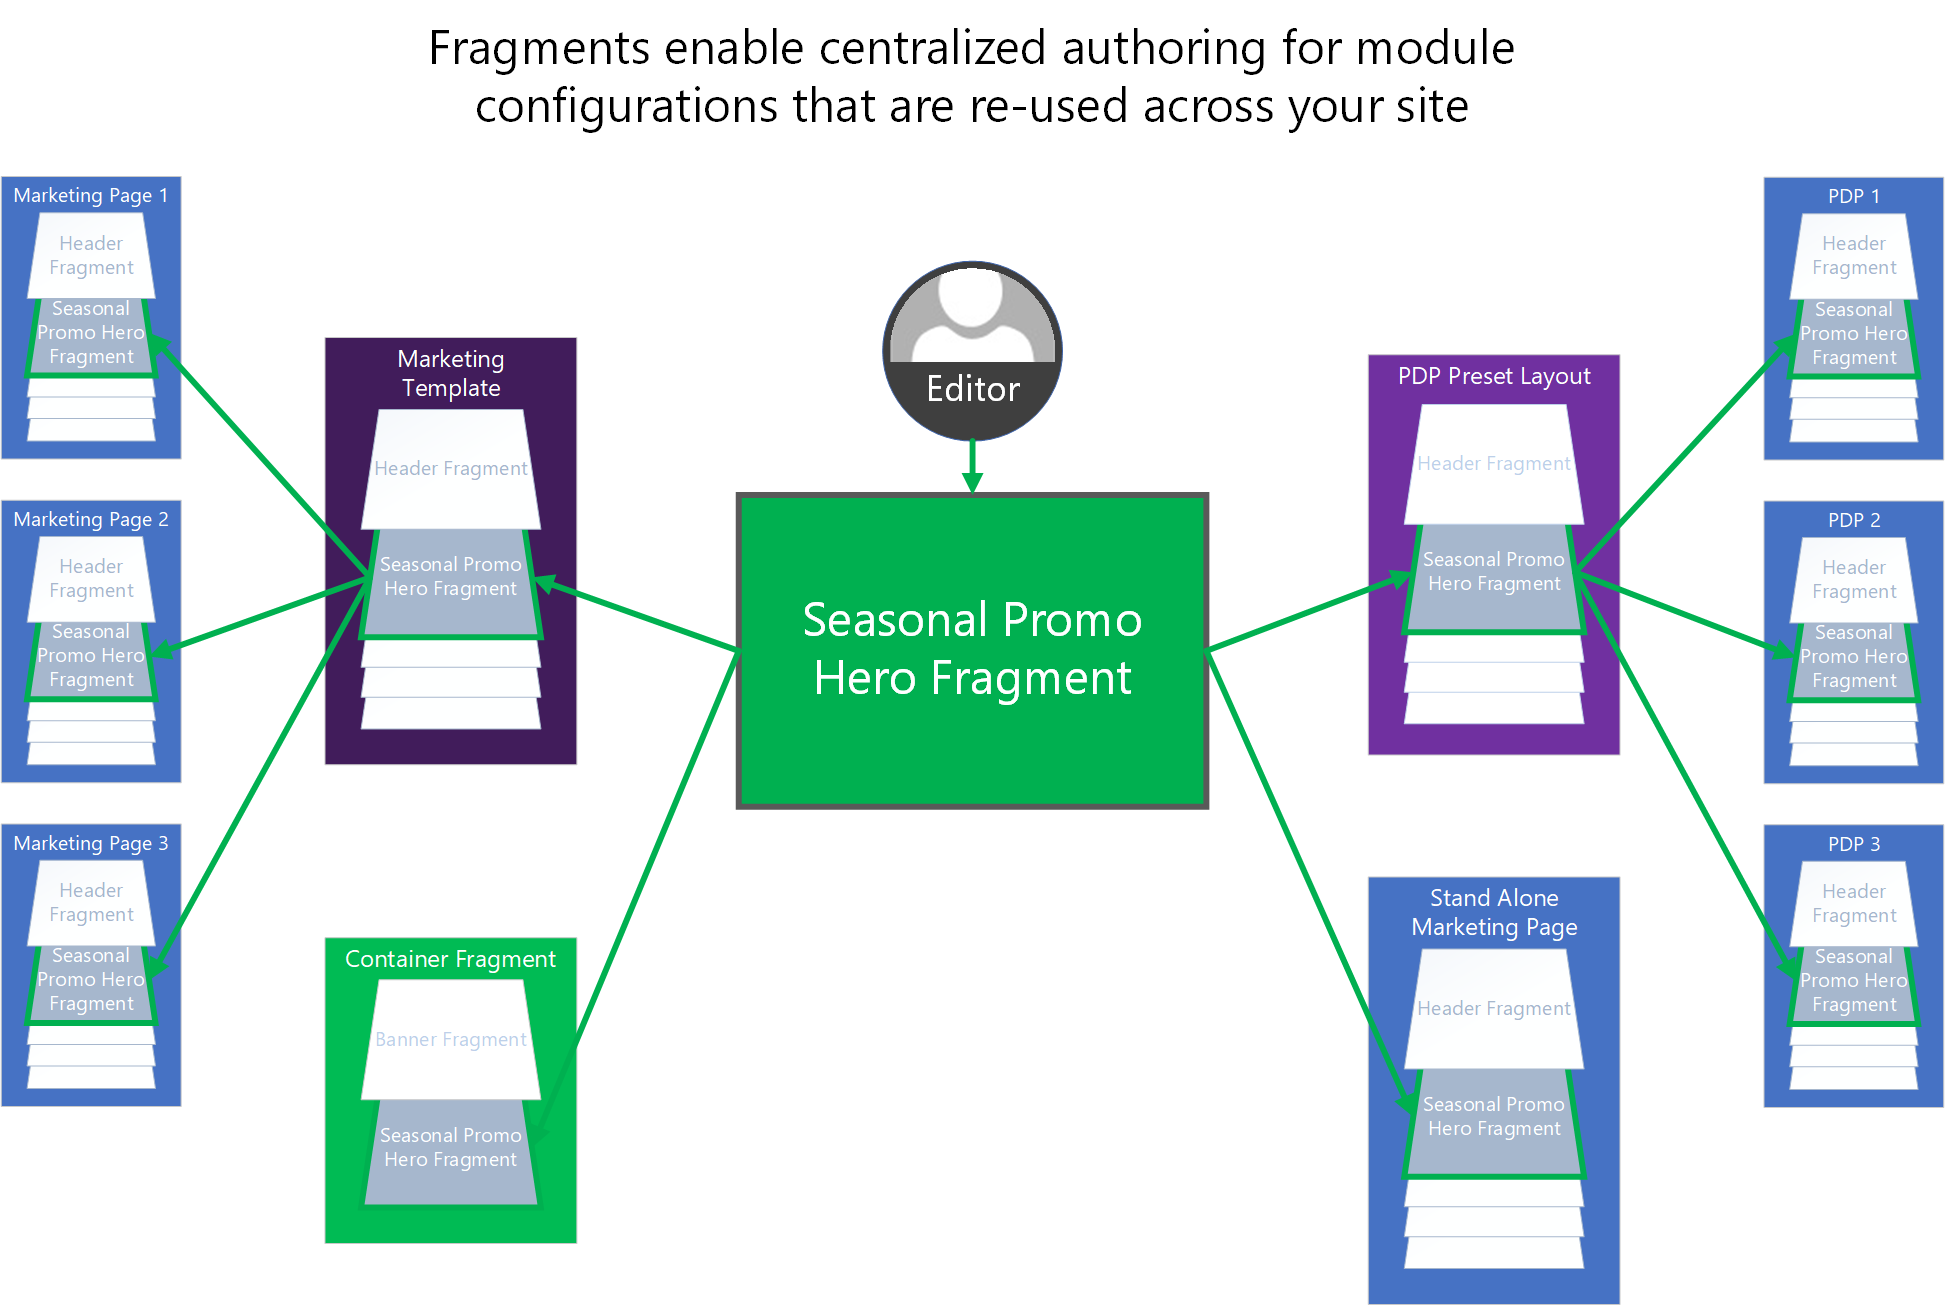 En illustrasjon som viser hvordan fragmenter kan brukes til å sentralisere redigering av delte modulkonfigurasjoner på tvers av et e-handelsområde.